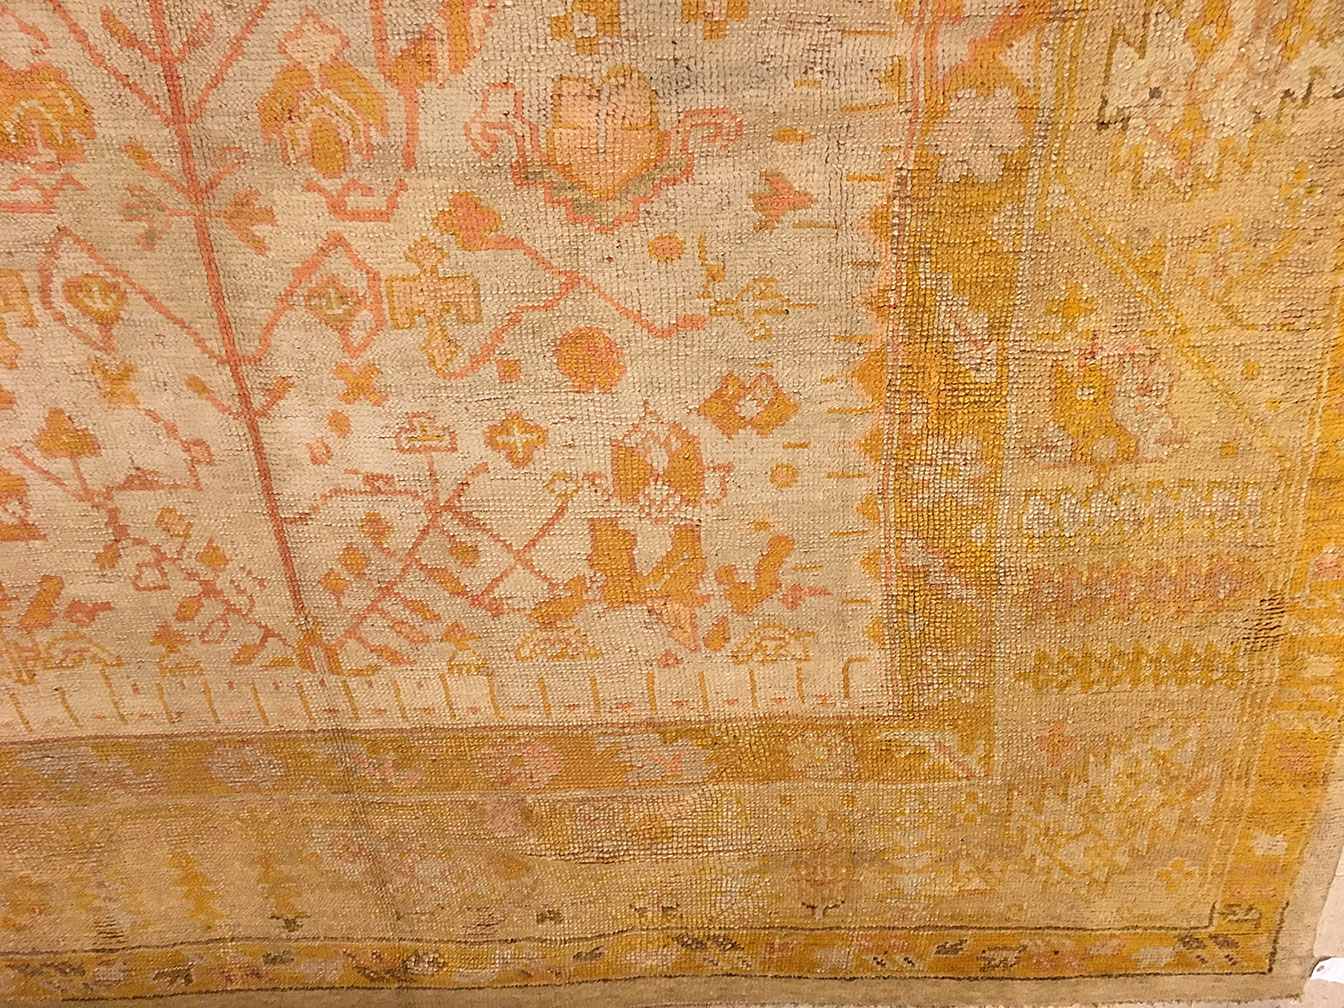 Antique oushak Carpet - # 53472